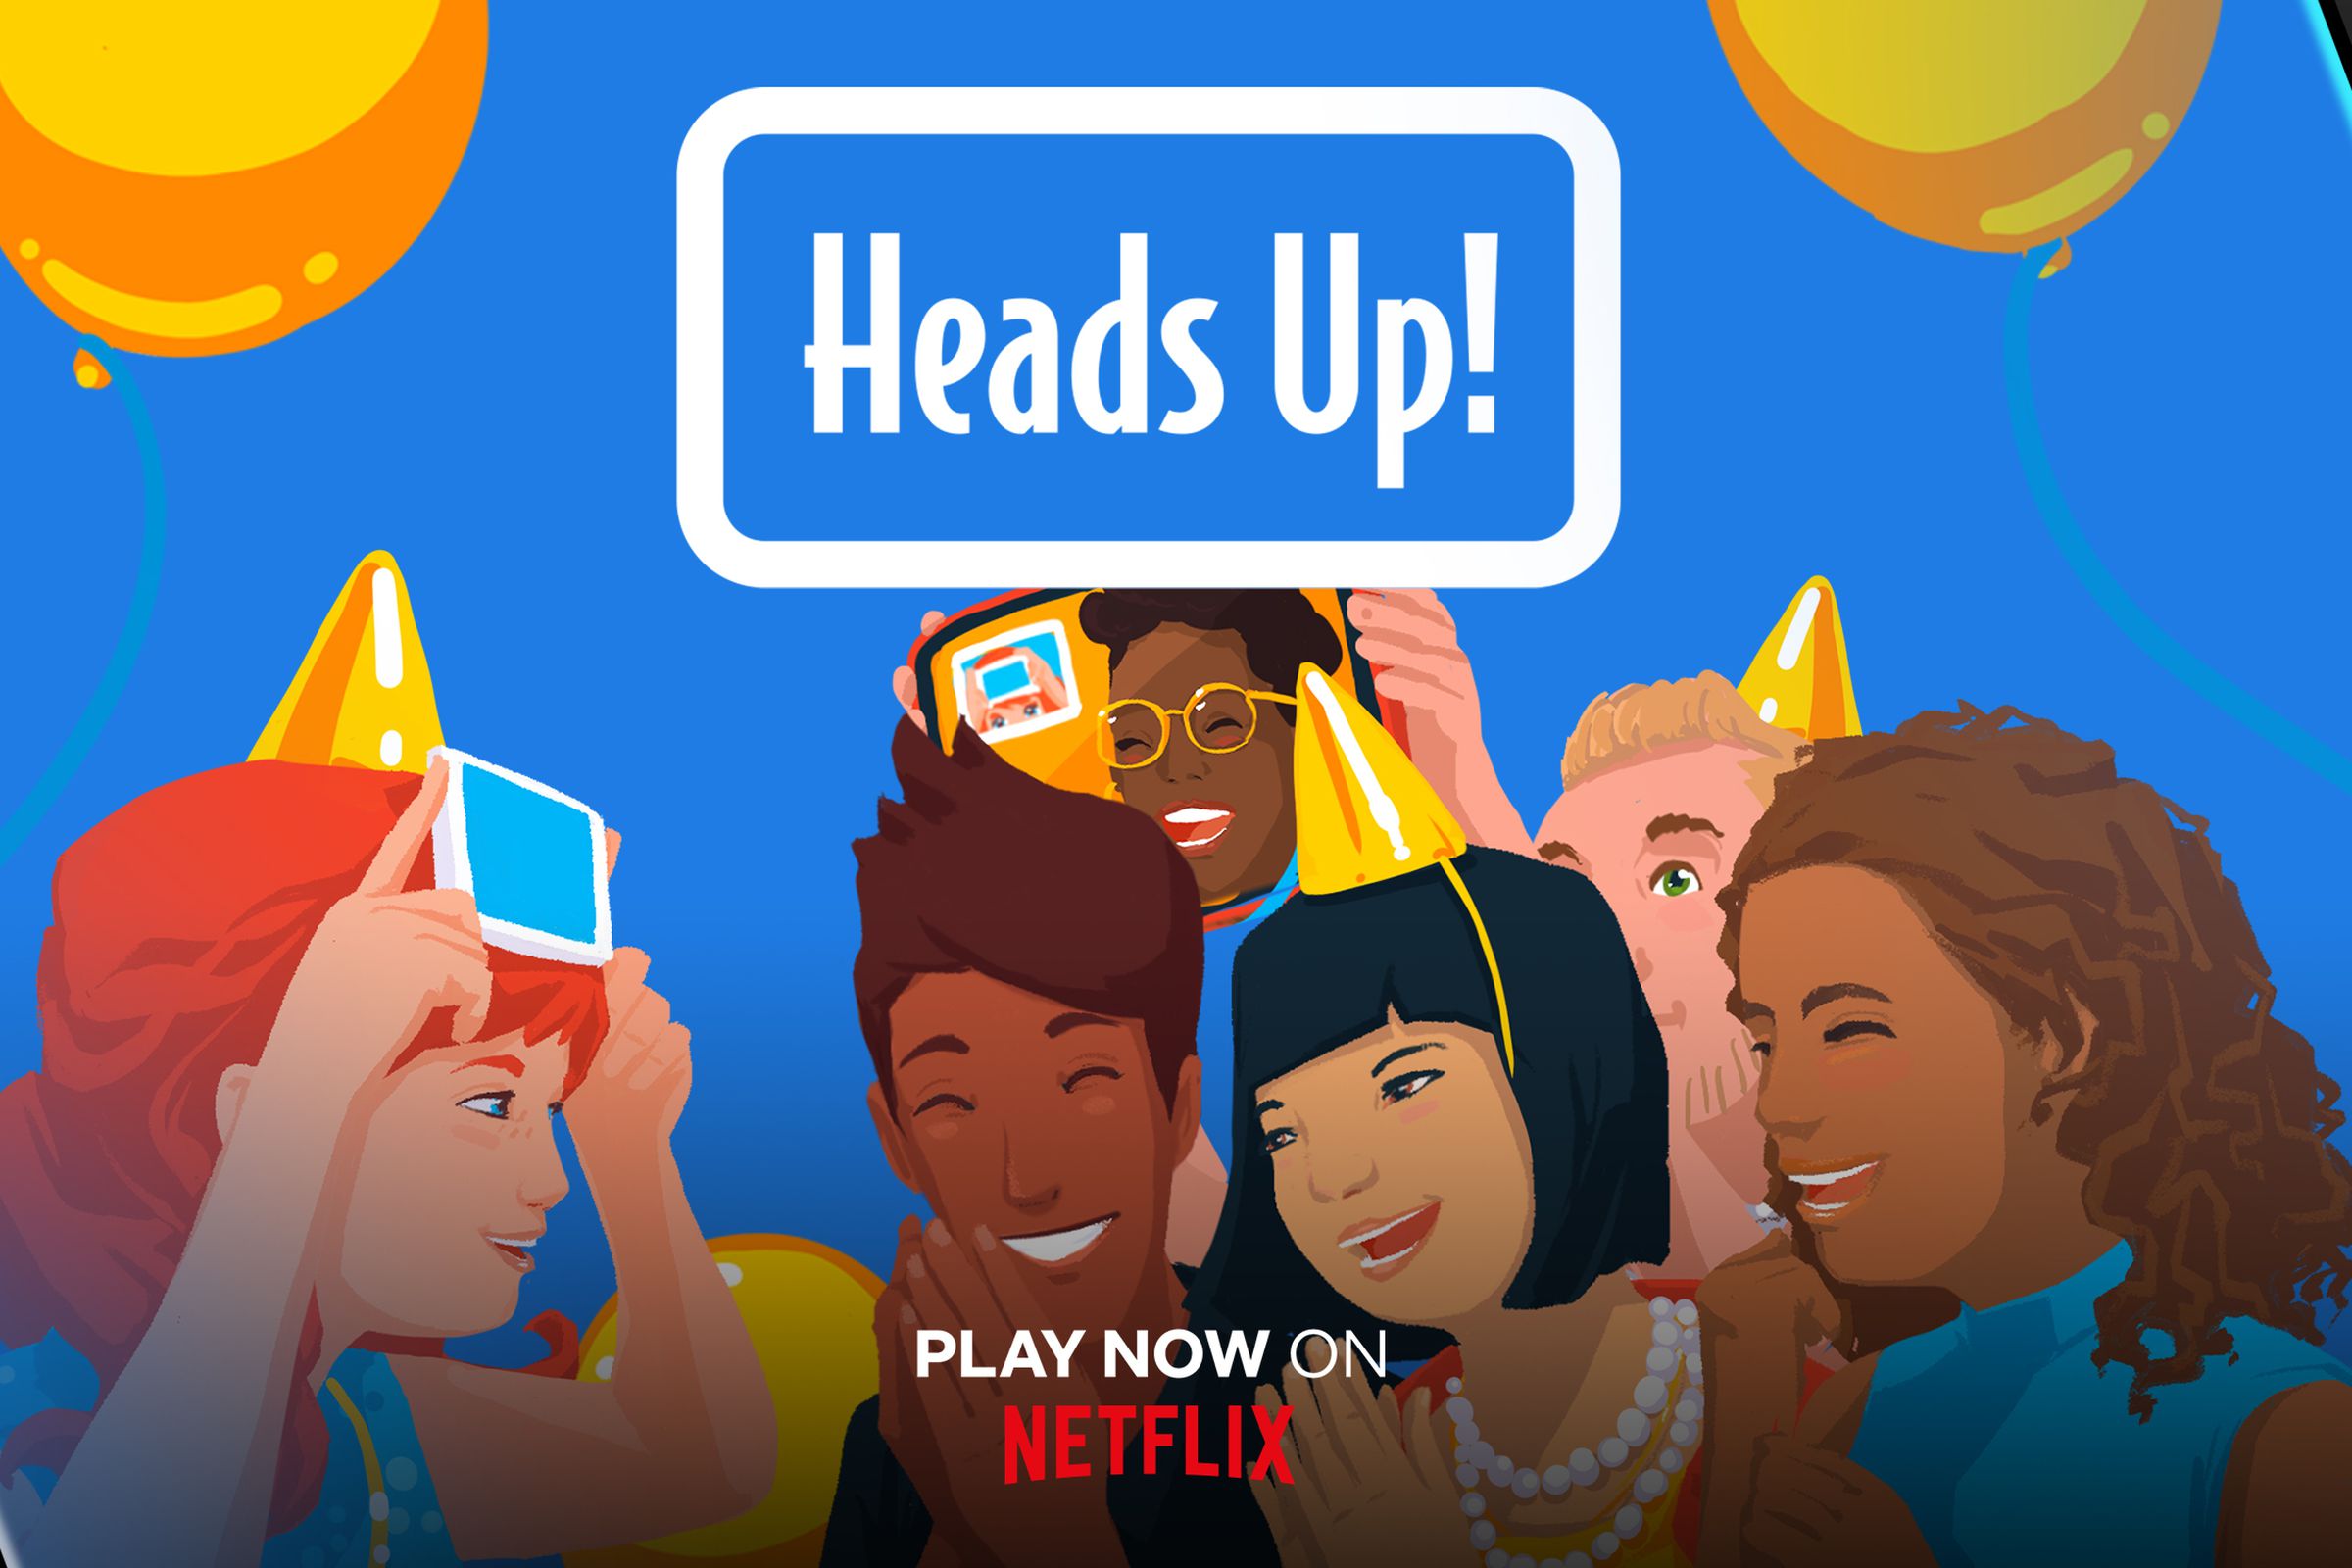 Heads Up! Netflix promotional image